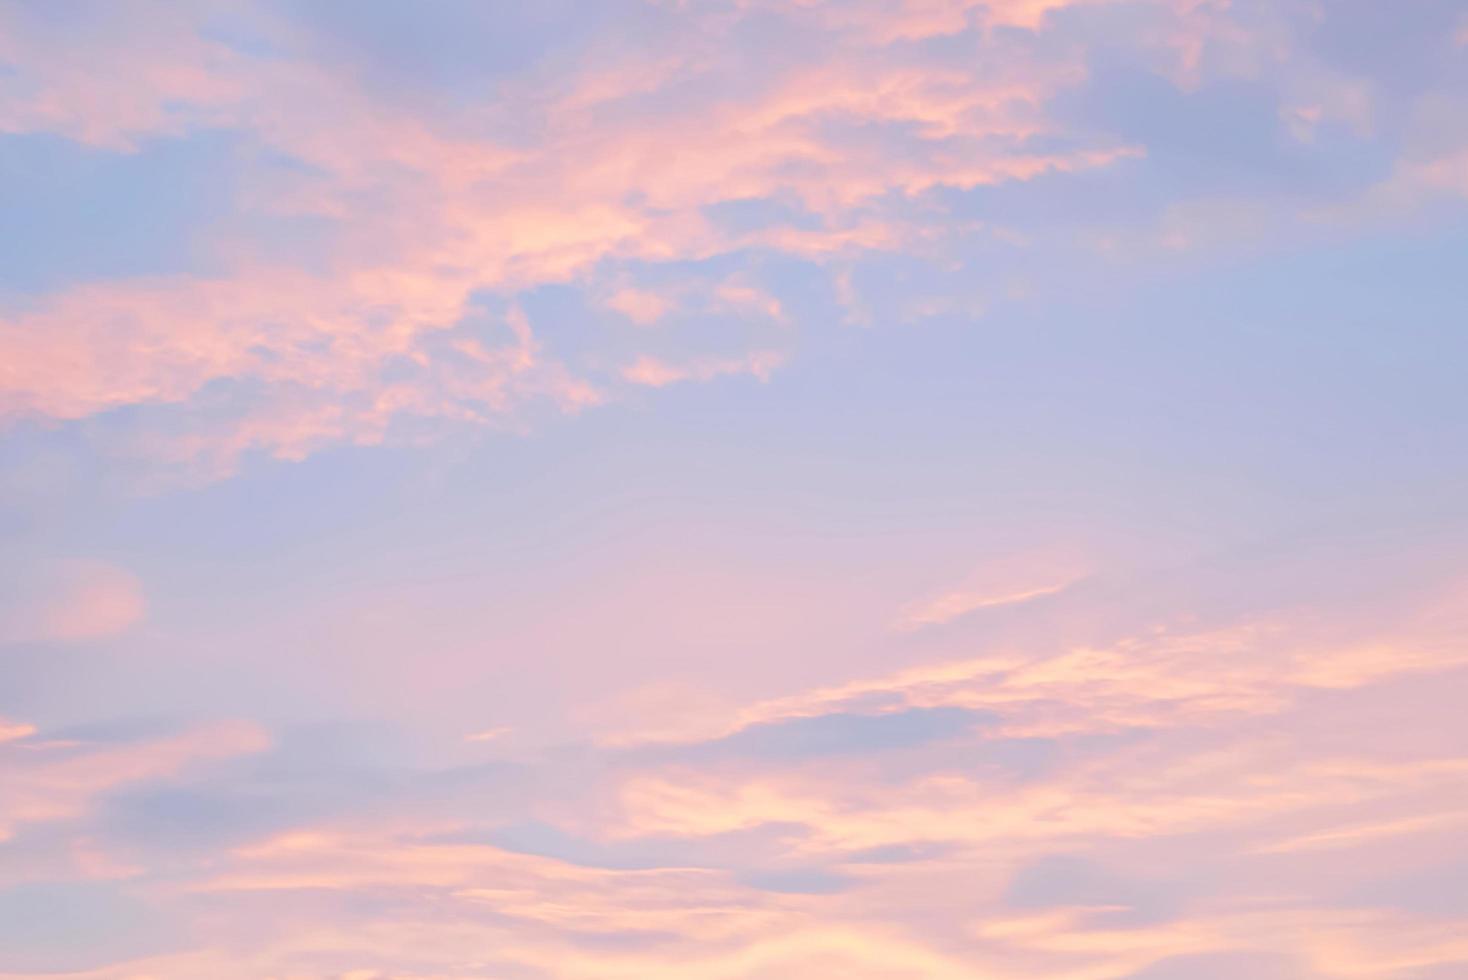 ciel bleu avec des nuages oranges et blancs. journée ensoleillée avec ciel orange en arrière-plan du soir photo